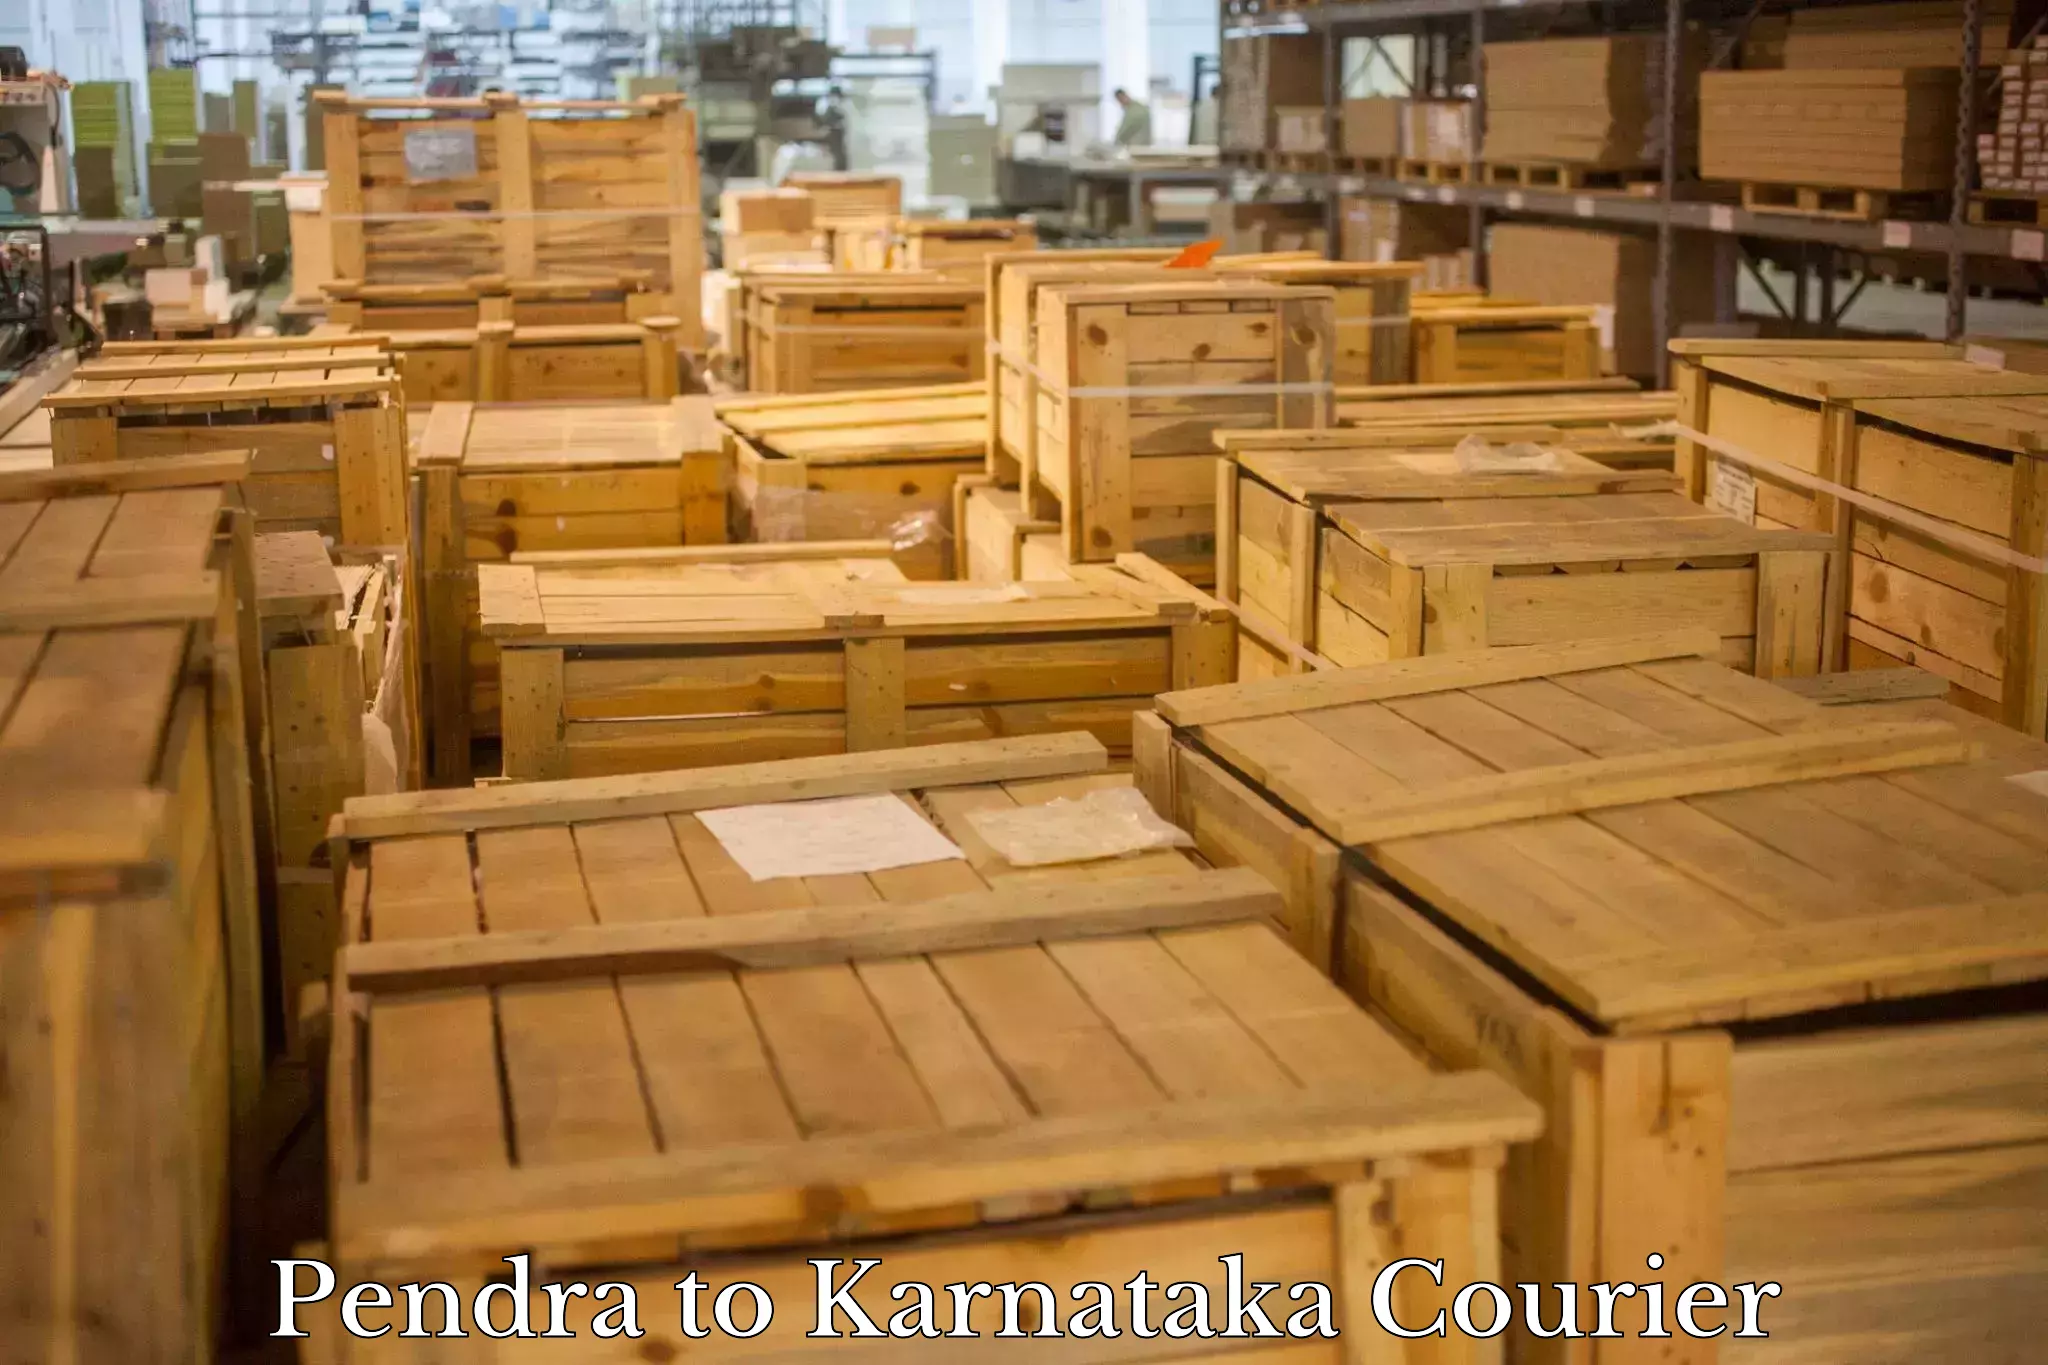 Global shipping solutions Pendra to Karnataka